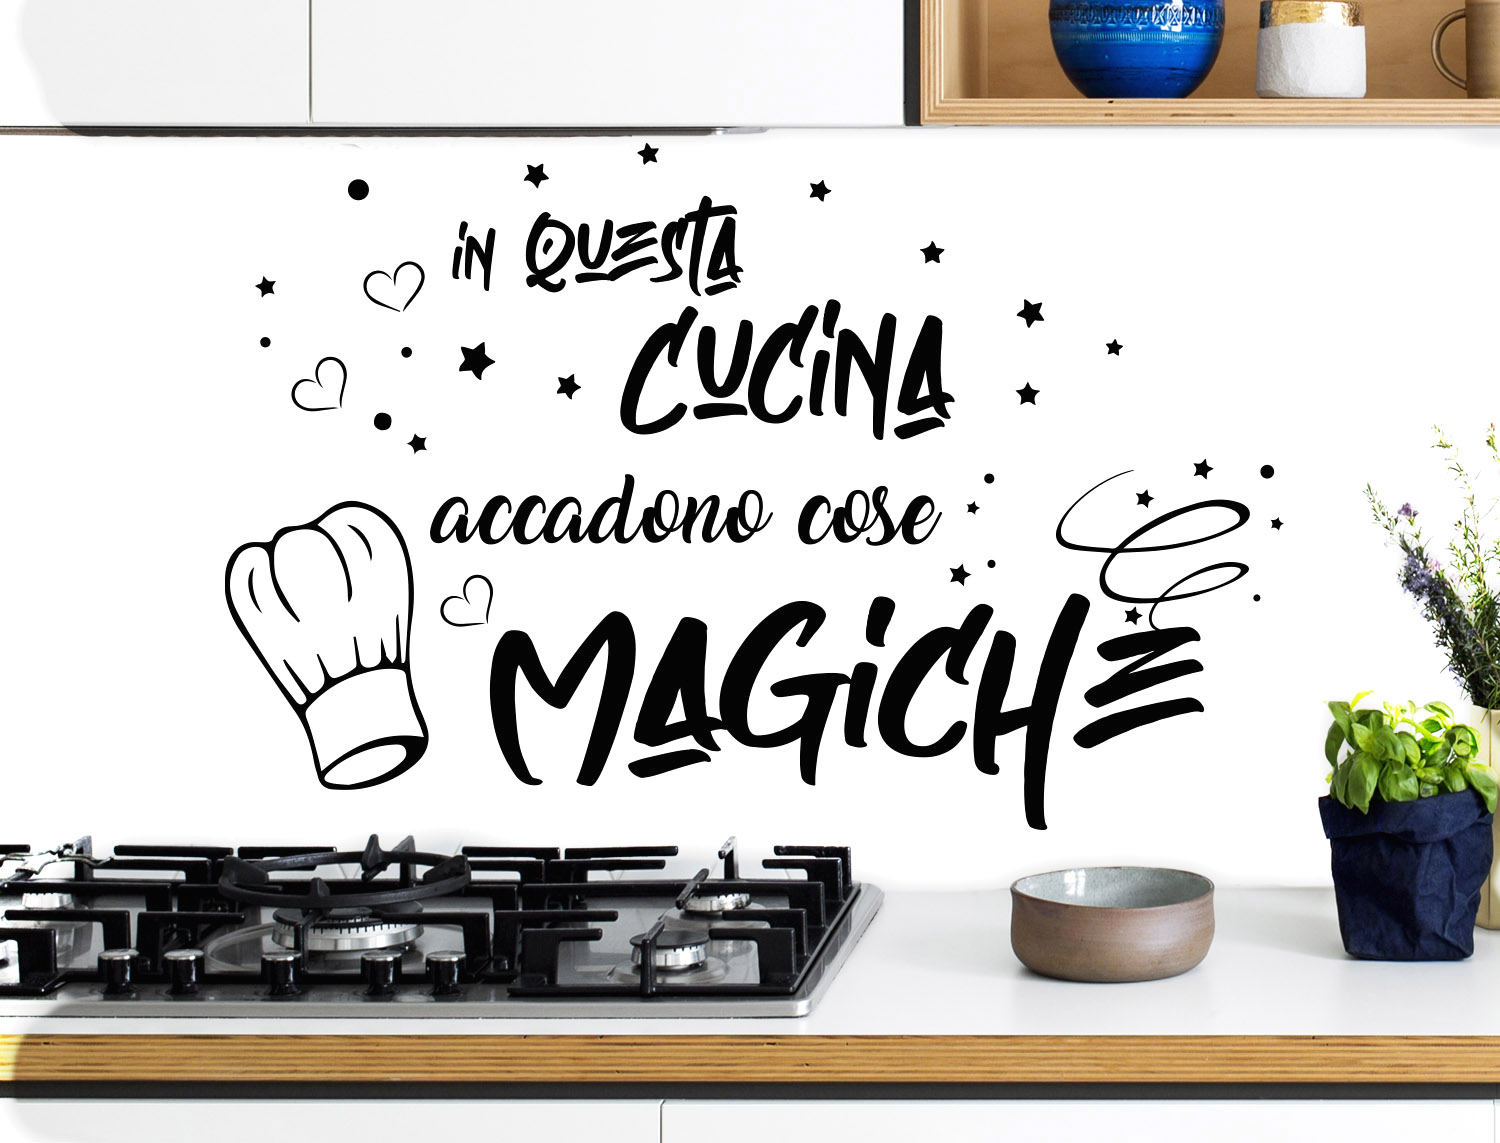 Sticker Design vi presenta In questa cucina accadono cose magiche